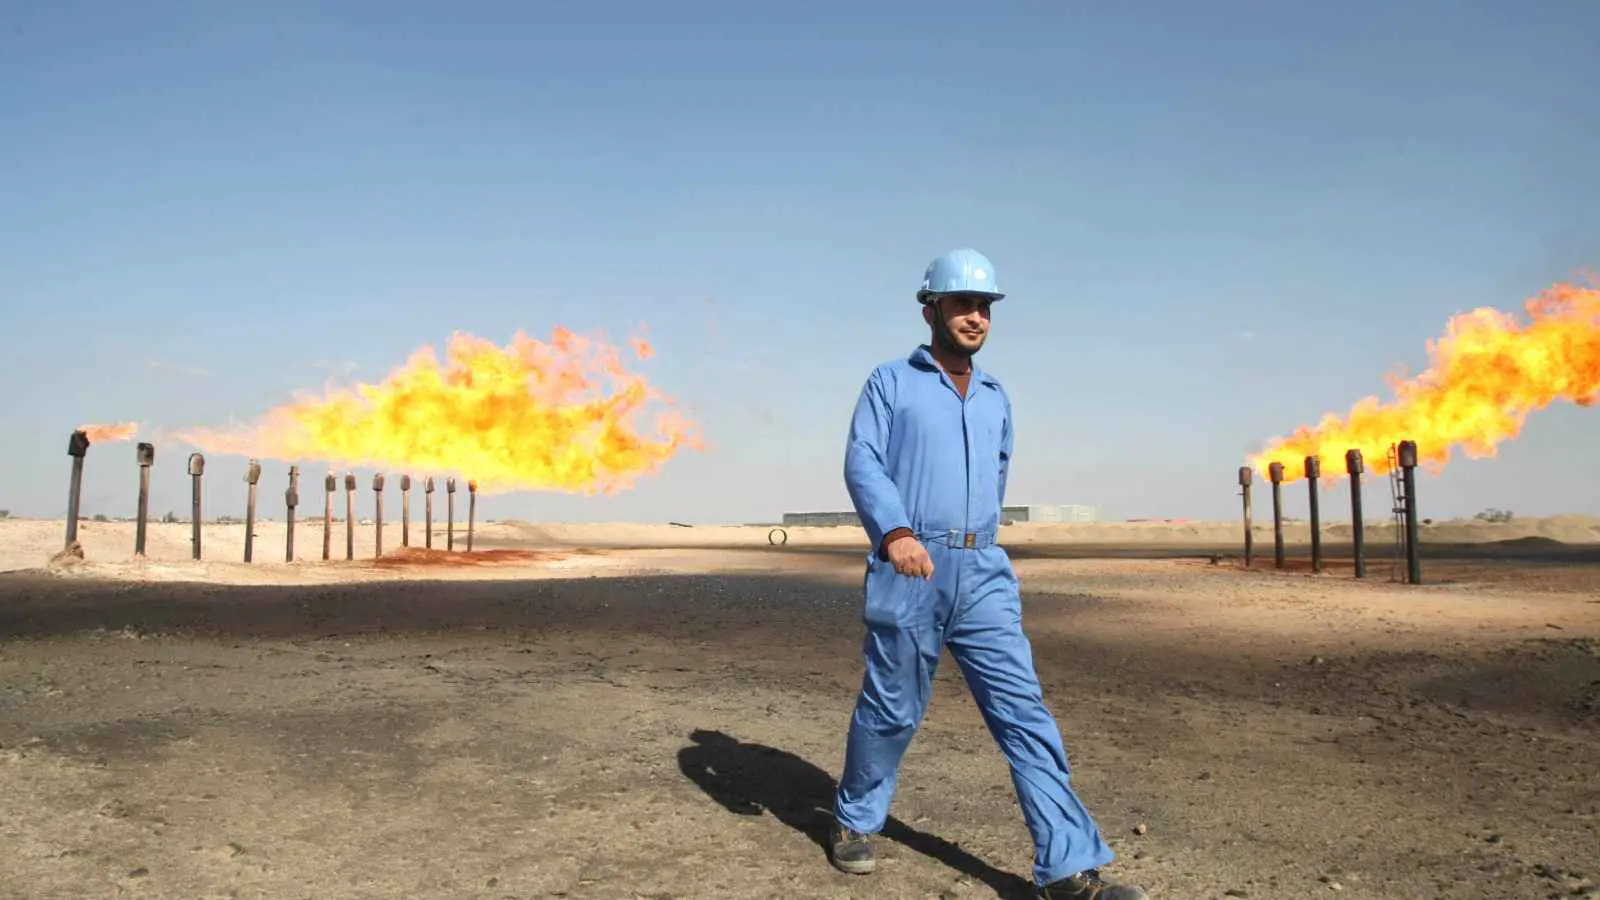 العراق يتجه نحو الطاقة "المتجددة" للتخلص من الغاز الإيراني